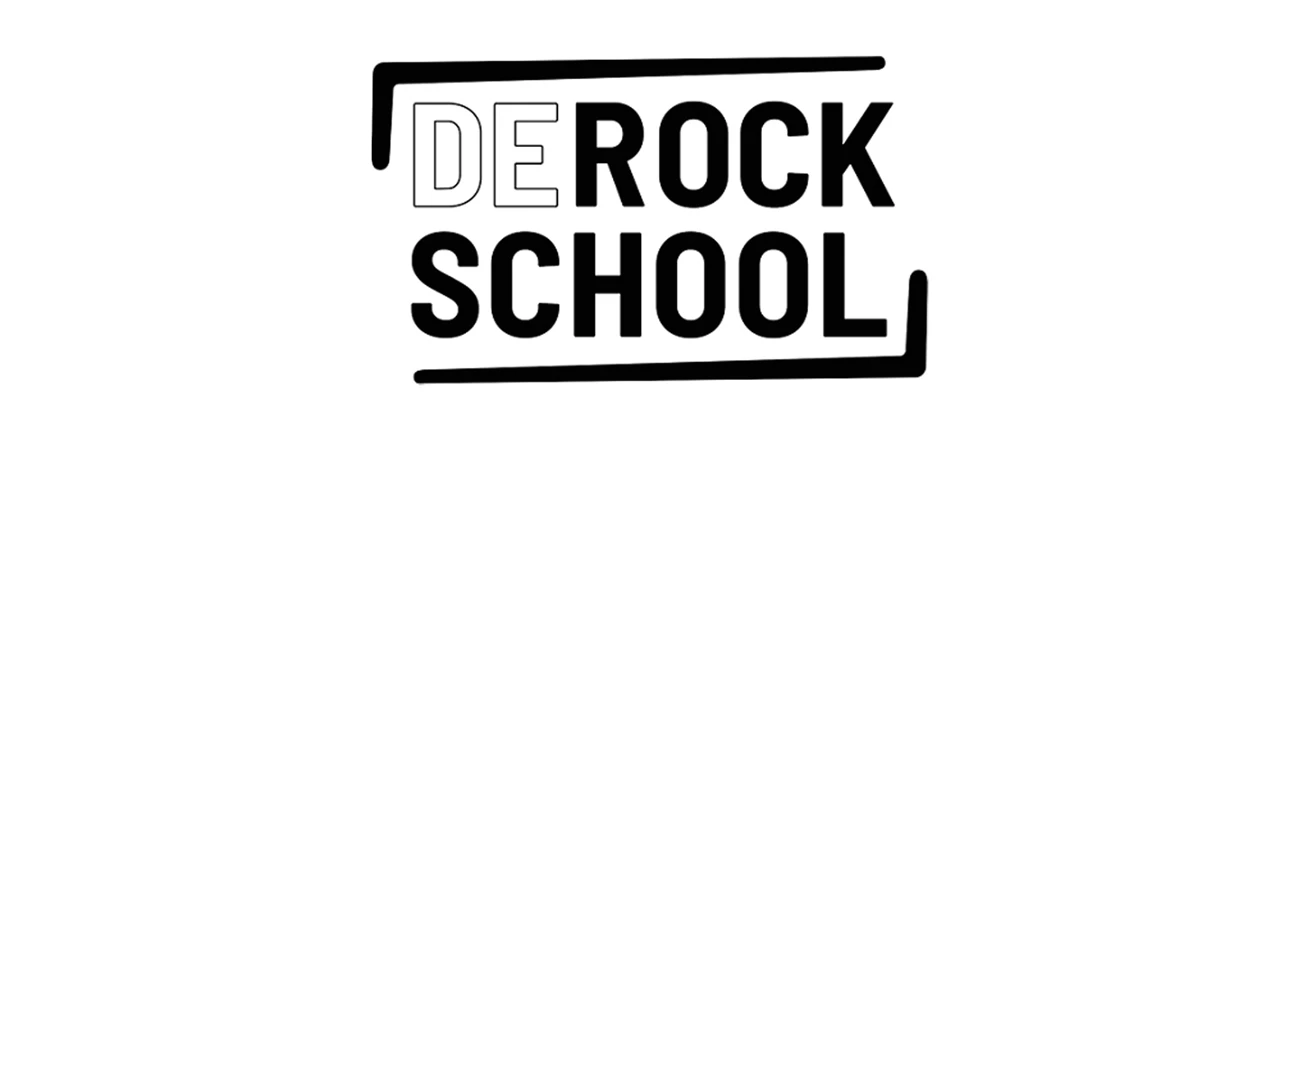 The Rockschool